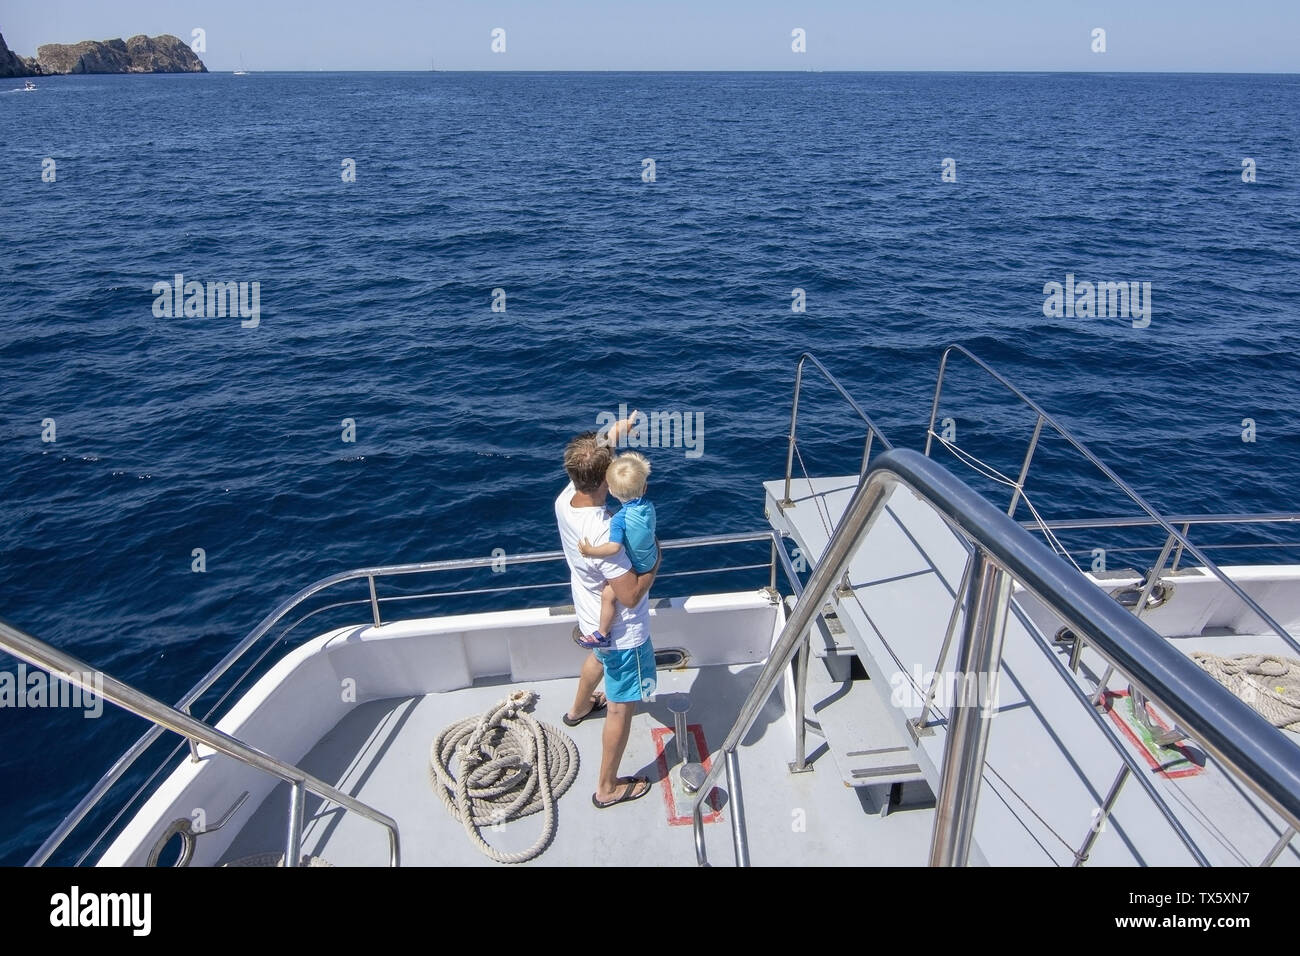 MALLORCA, España - Junio 23, 2019: el Padre y el hijo en tourboat tropical con Cruceros Cormoran en un día soleado en el mar el 23 de junio de 2019 en Mallorca, Spai Foto de stock